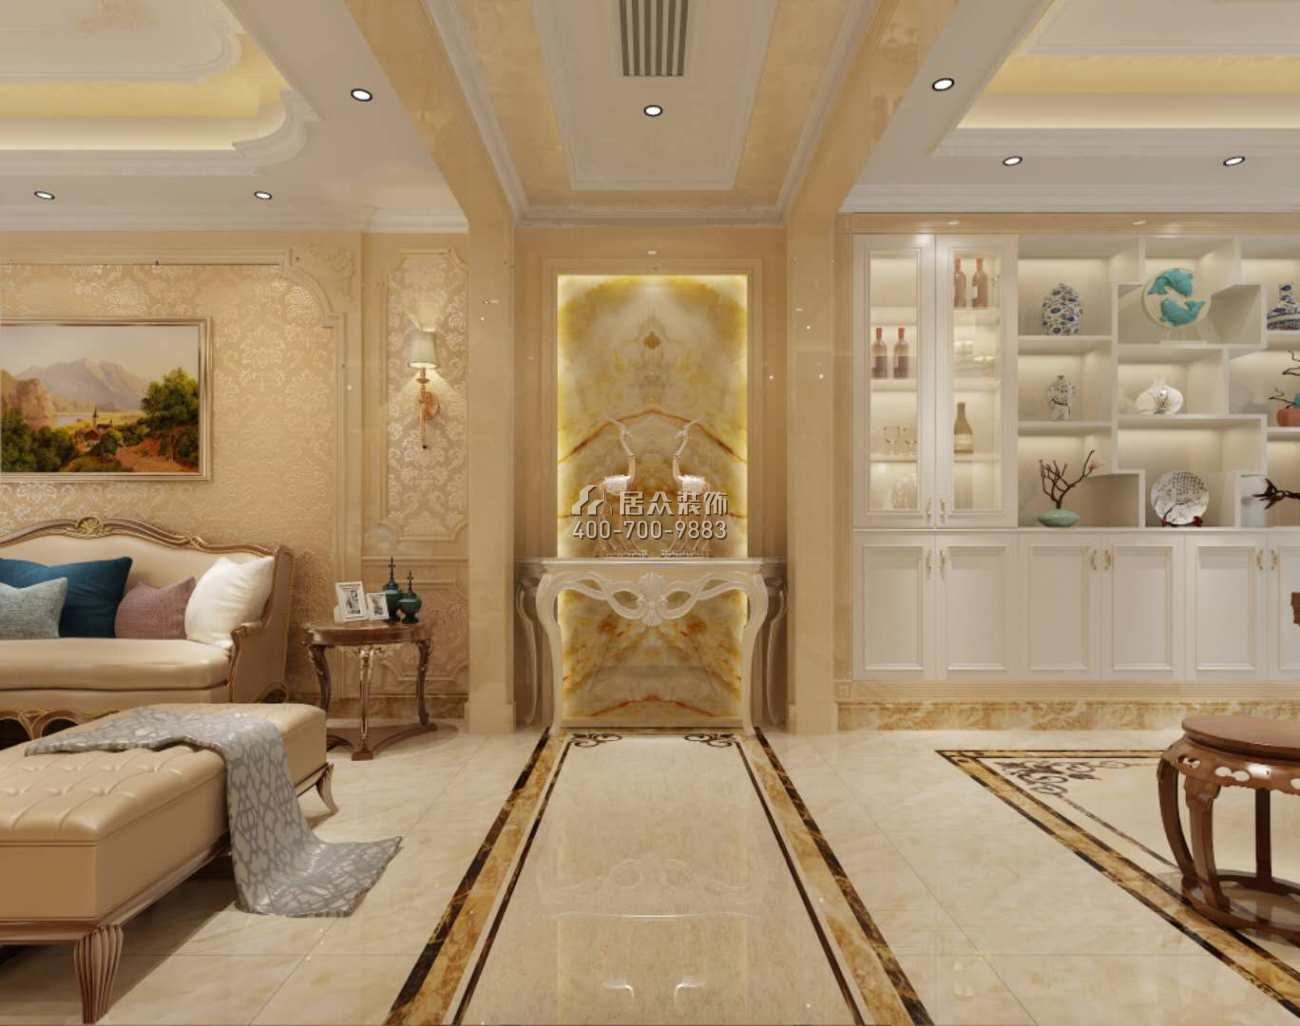 碧桂園太陽城400平方米歐式風格別墅戶型客廳裝修效果圖